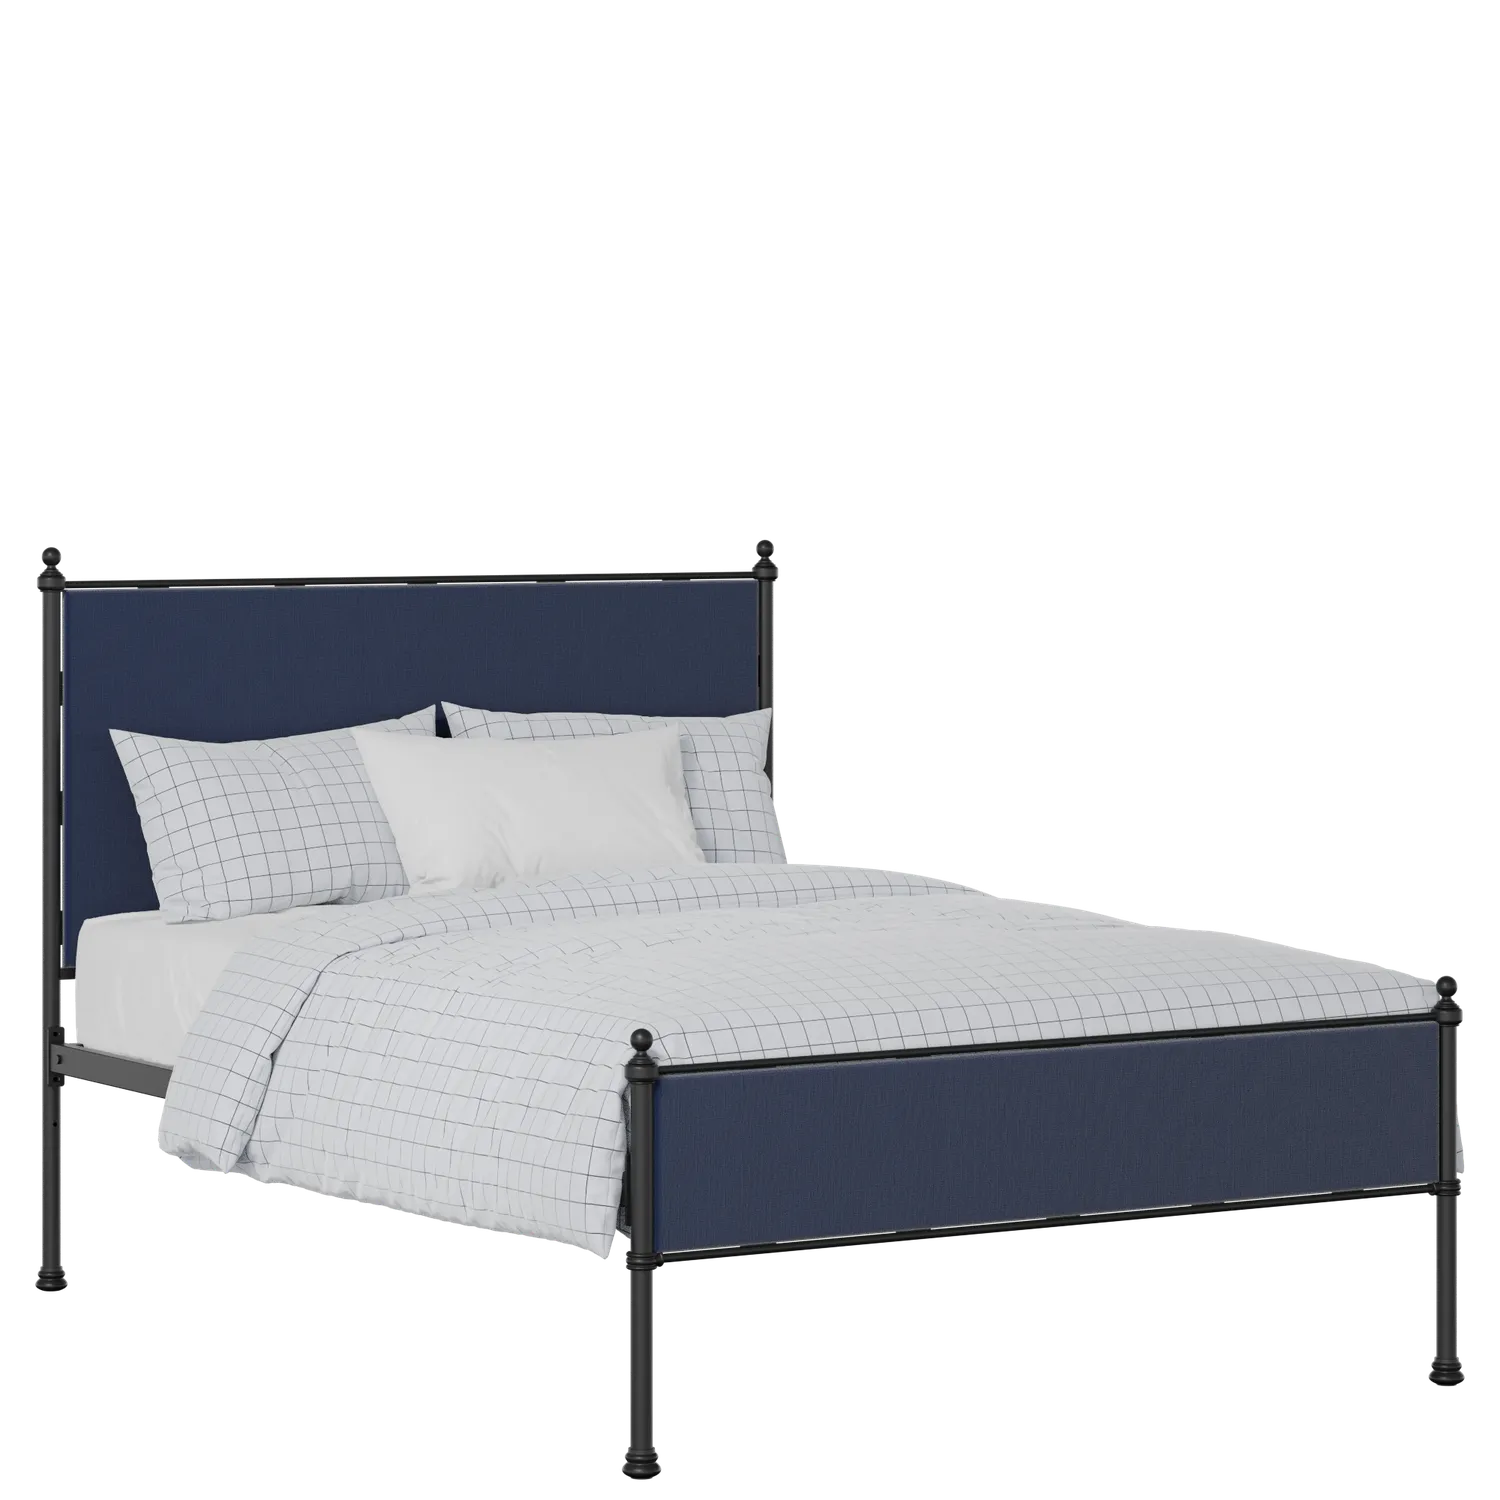 Neville Slim cama de metal en negro con tela azul